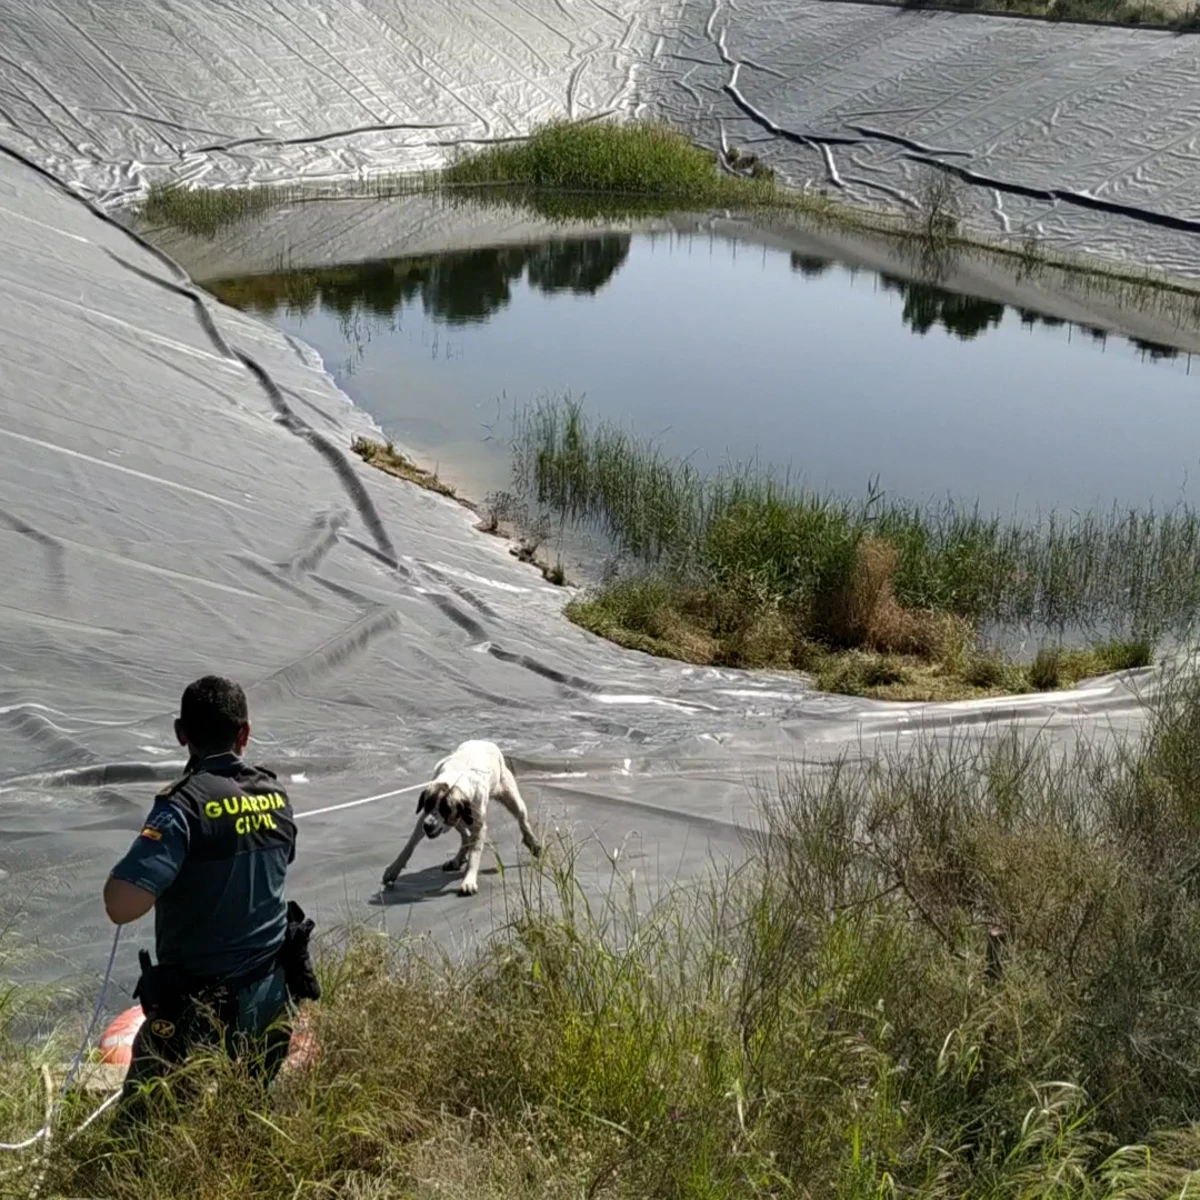 La Guardia Civil rescata a dos perros un pantano de riego de Totana | Onda Cero Radio